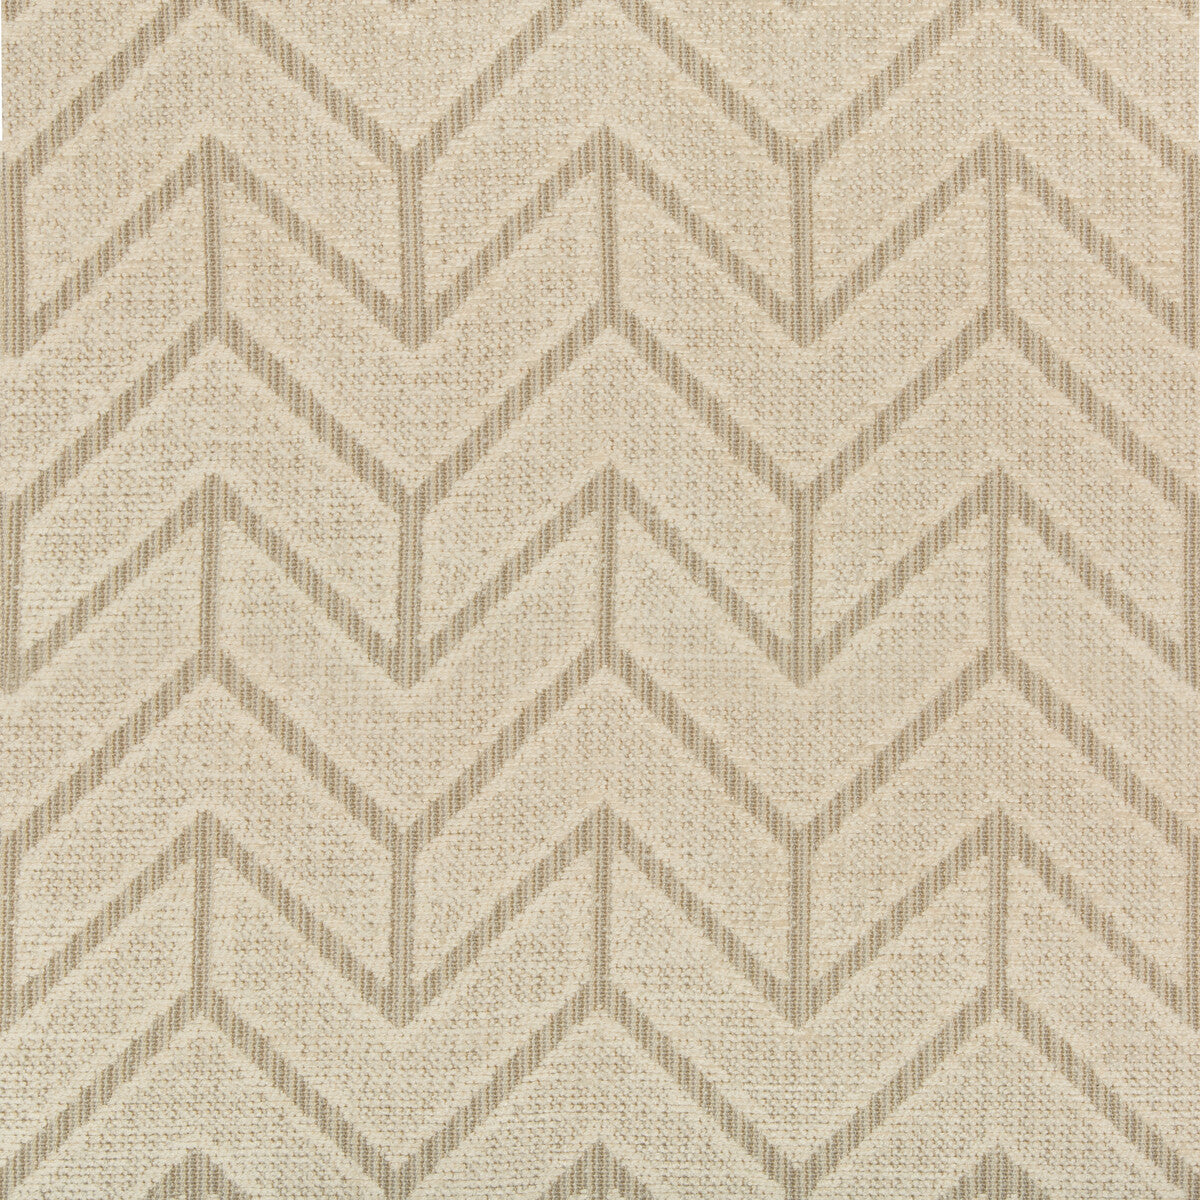 Kravet Design fabric in 35644-16 color - pattern 35644.16.0 - by Kravet Design